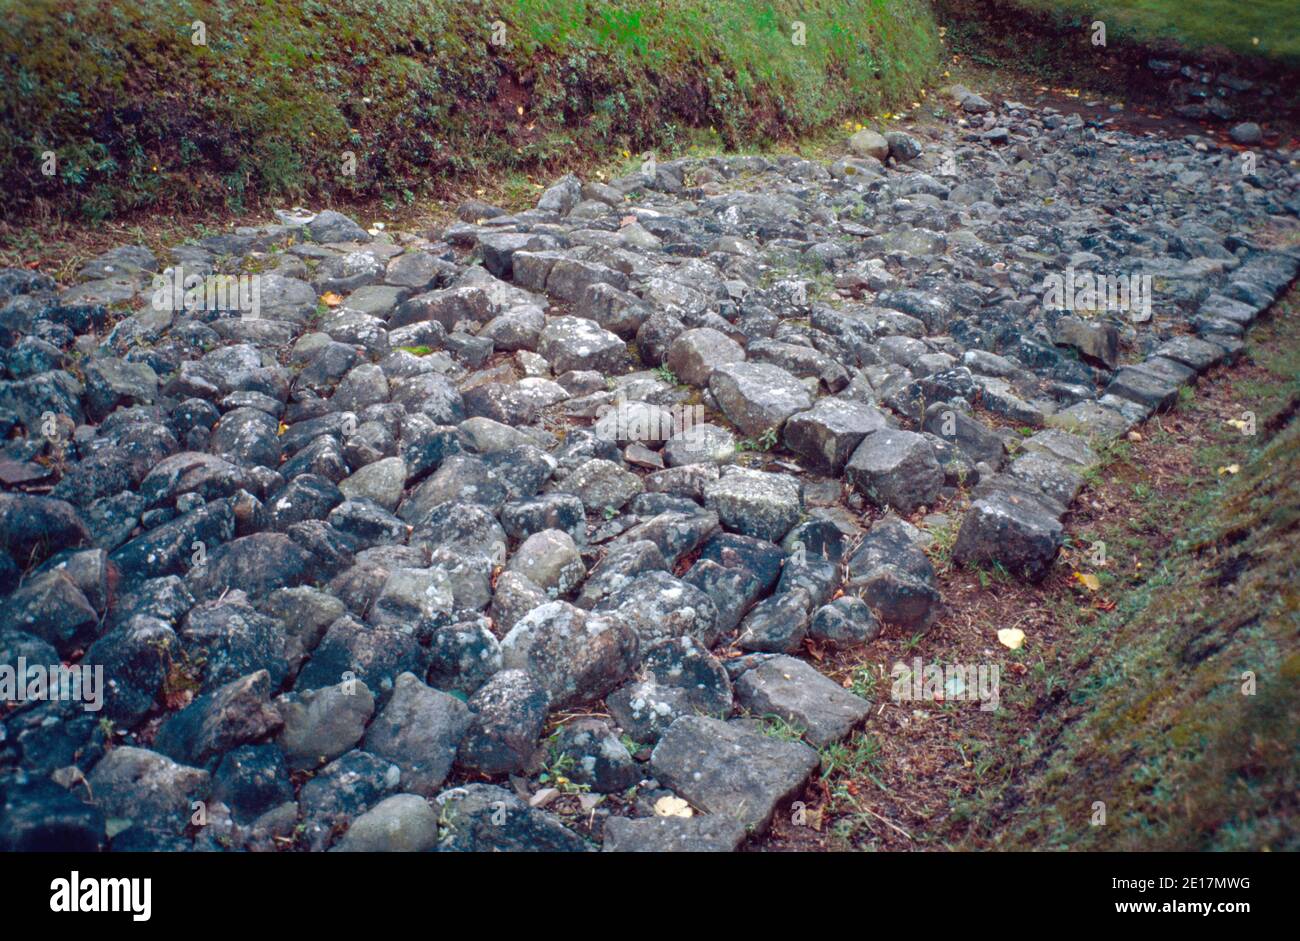 Antonine Wall bleibt in Bearsden, Schottland. Die Antonine Wall (Vallum Antonini), von den Römern über das, was jetzt ist der Central Belt of Scotland, zwischen dem Firth of Forth und dem Firth of Clyde, etwa 100km nördlich von der Hadrian Wall gebaut. Archivscan von einem Dia. September 1992. Stockfoto